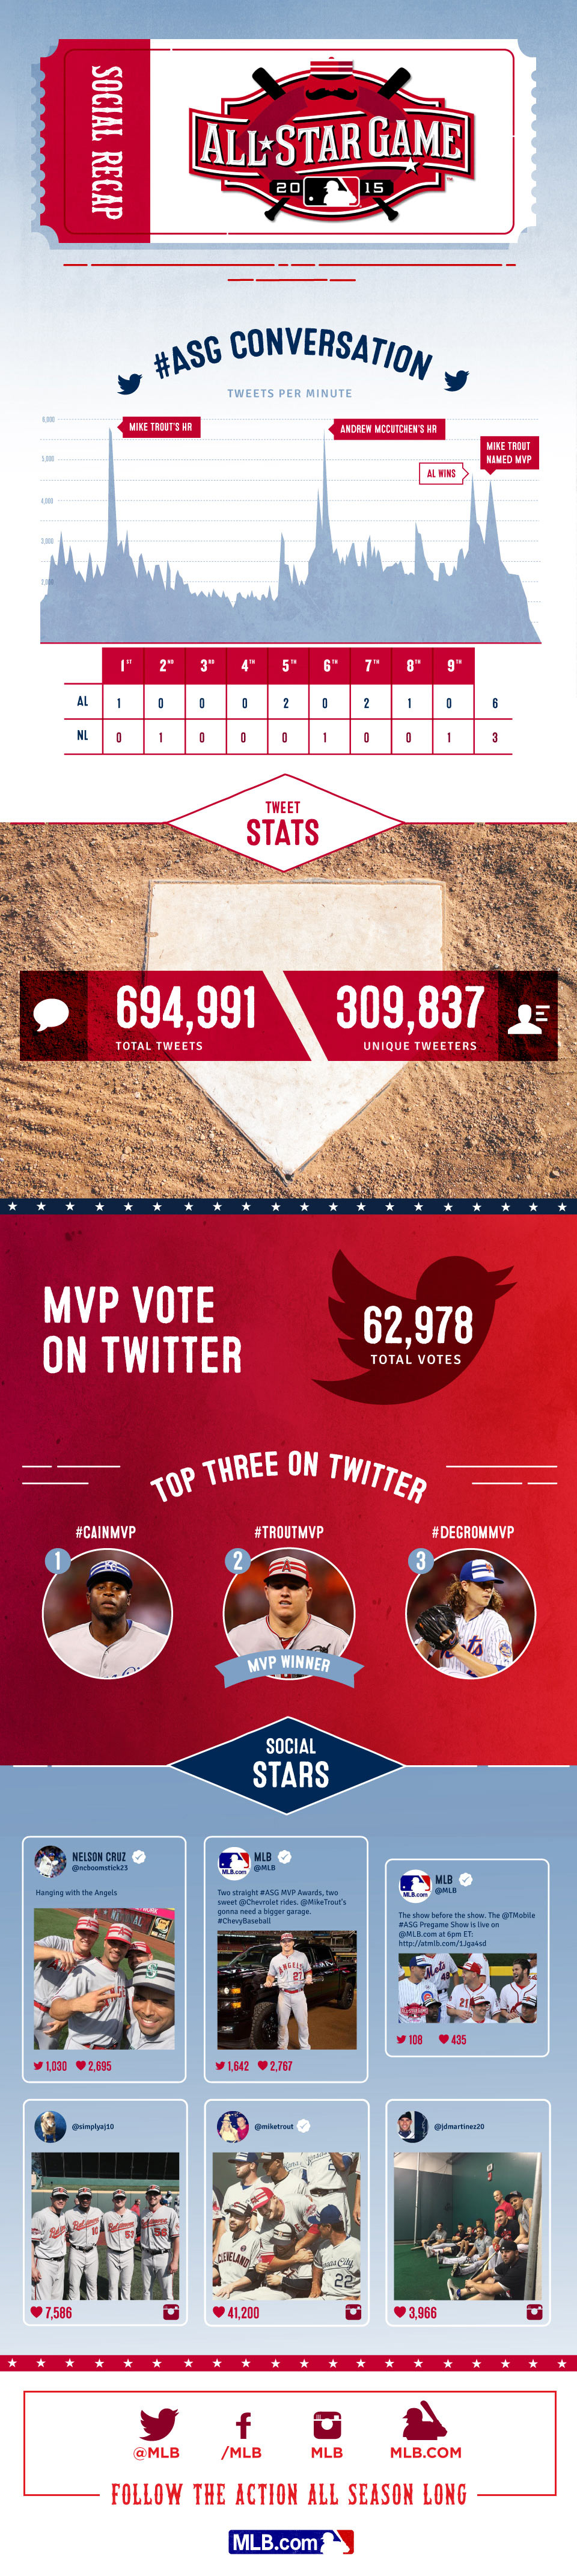 2015 MLB All-Star Game Social Media Recap